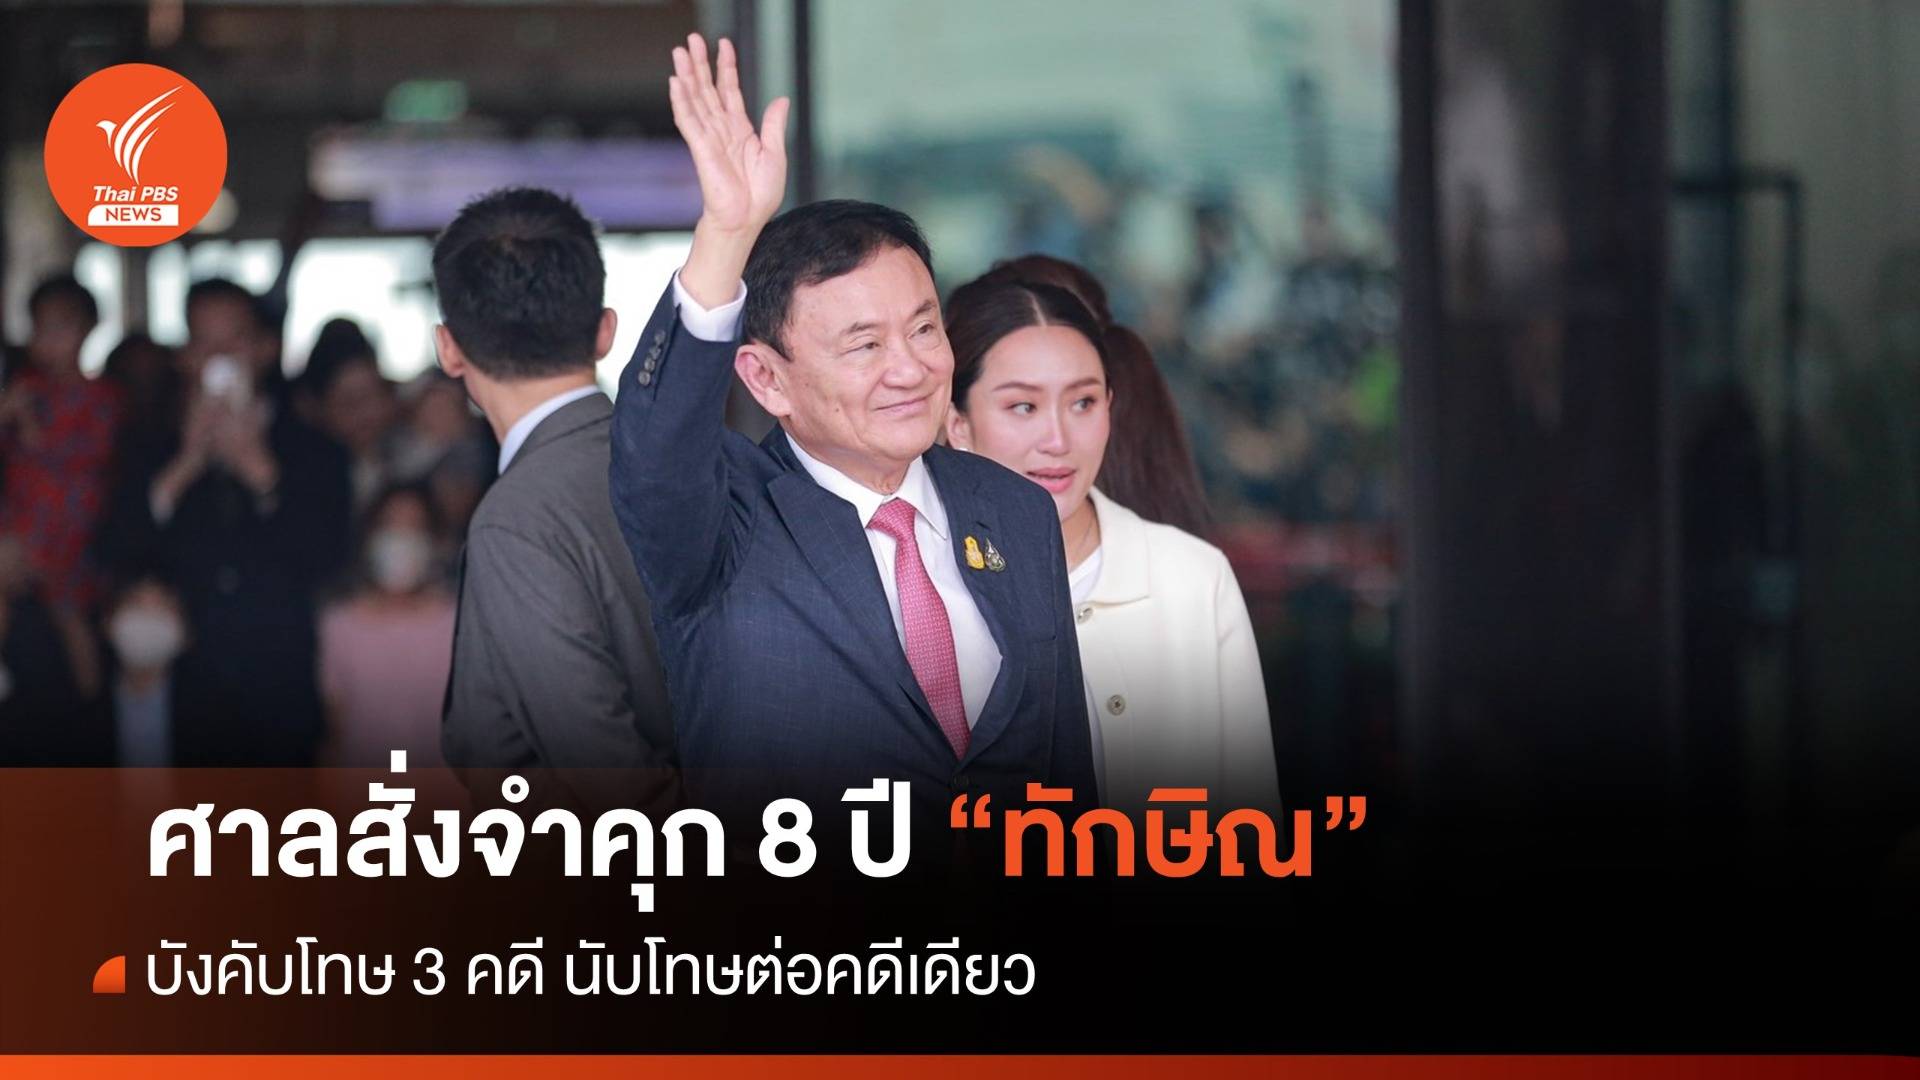 ทักษิณกลับไทย : ศาลฎีกาฯ บังคับโทษ 3 คดี สั่งจำคุก “ทักษิณ” 8 ปี